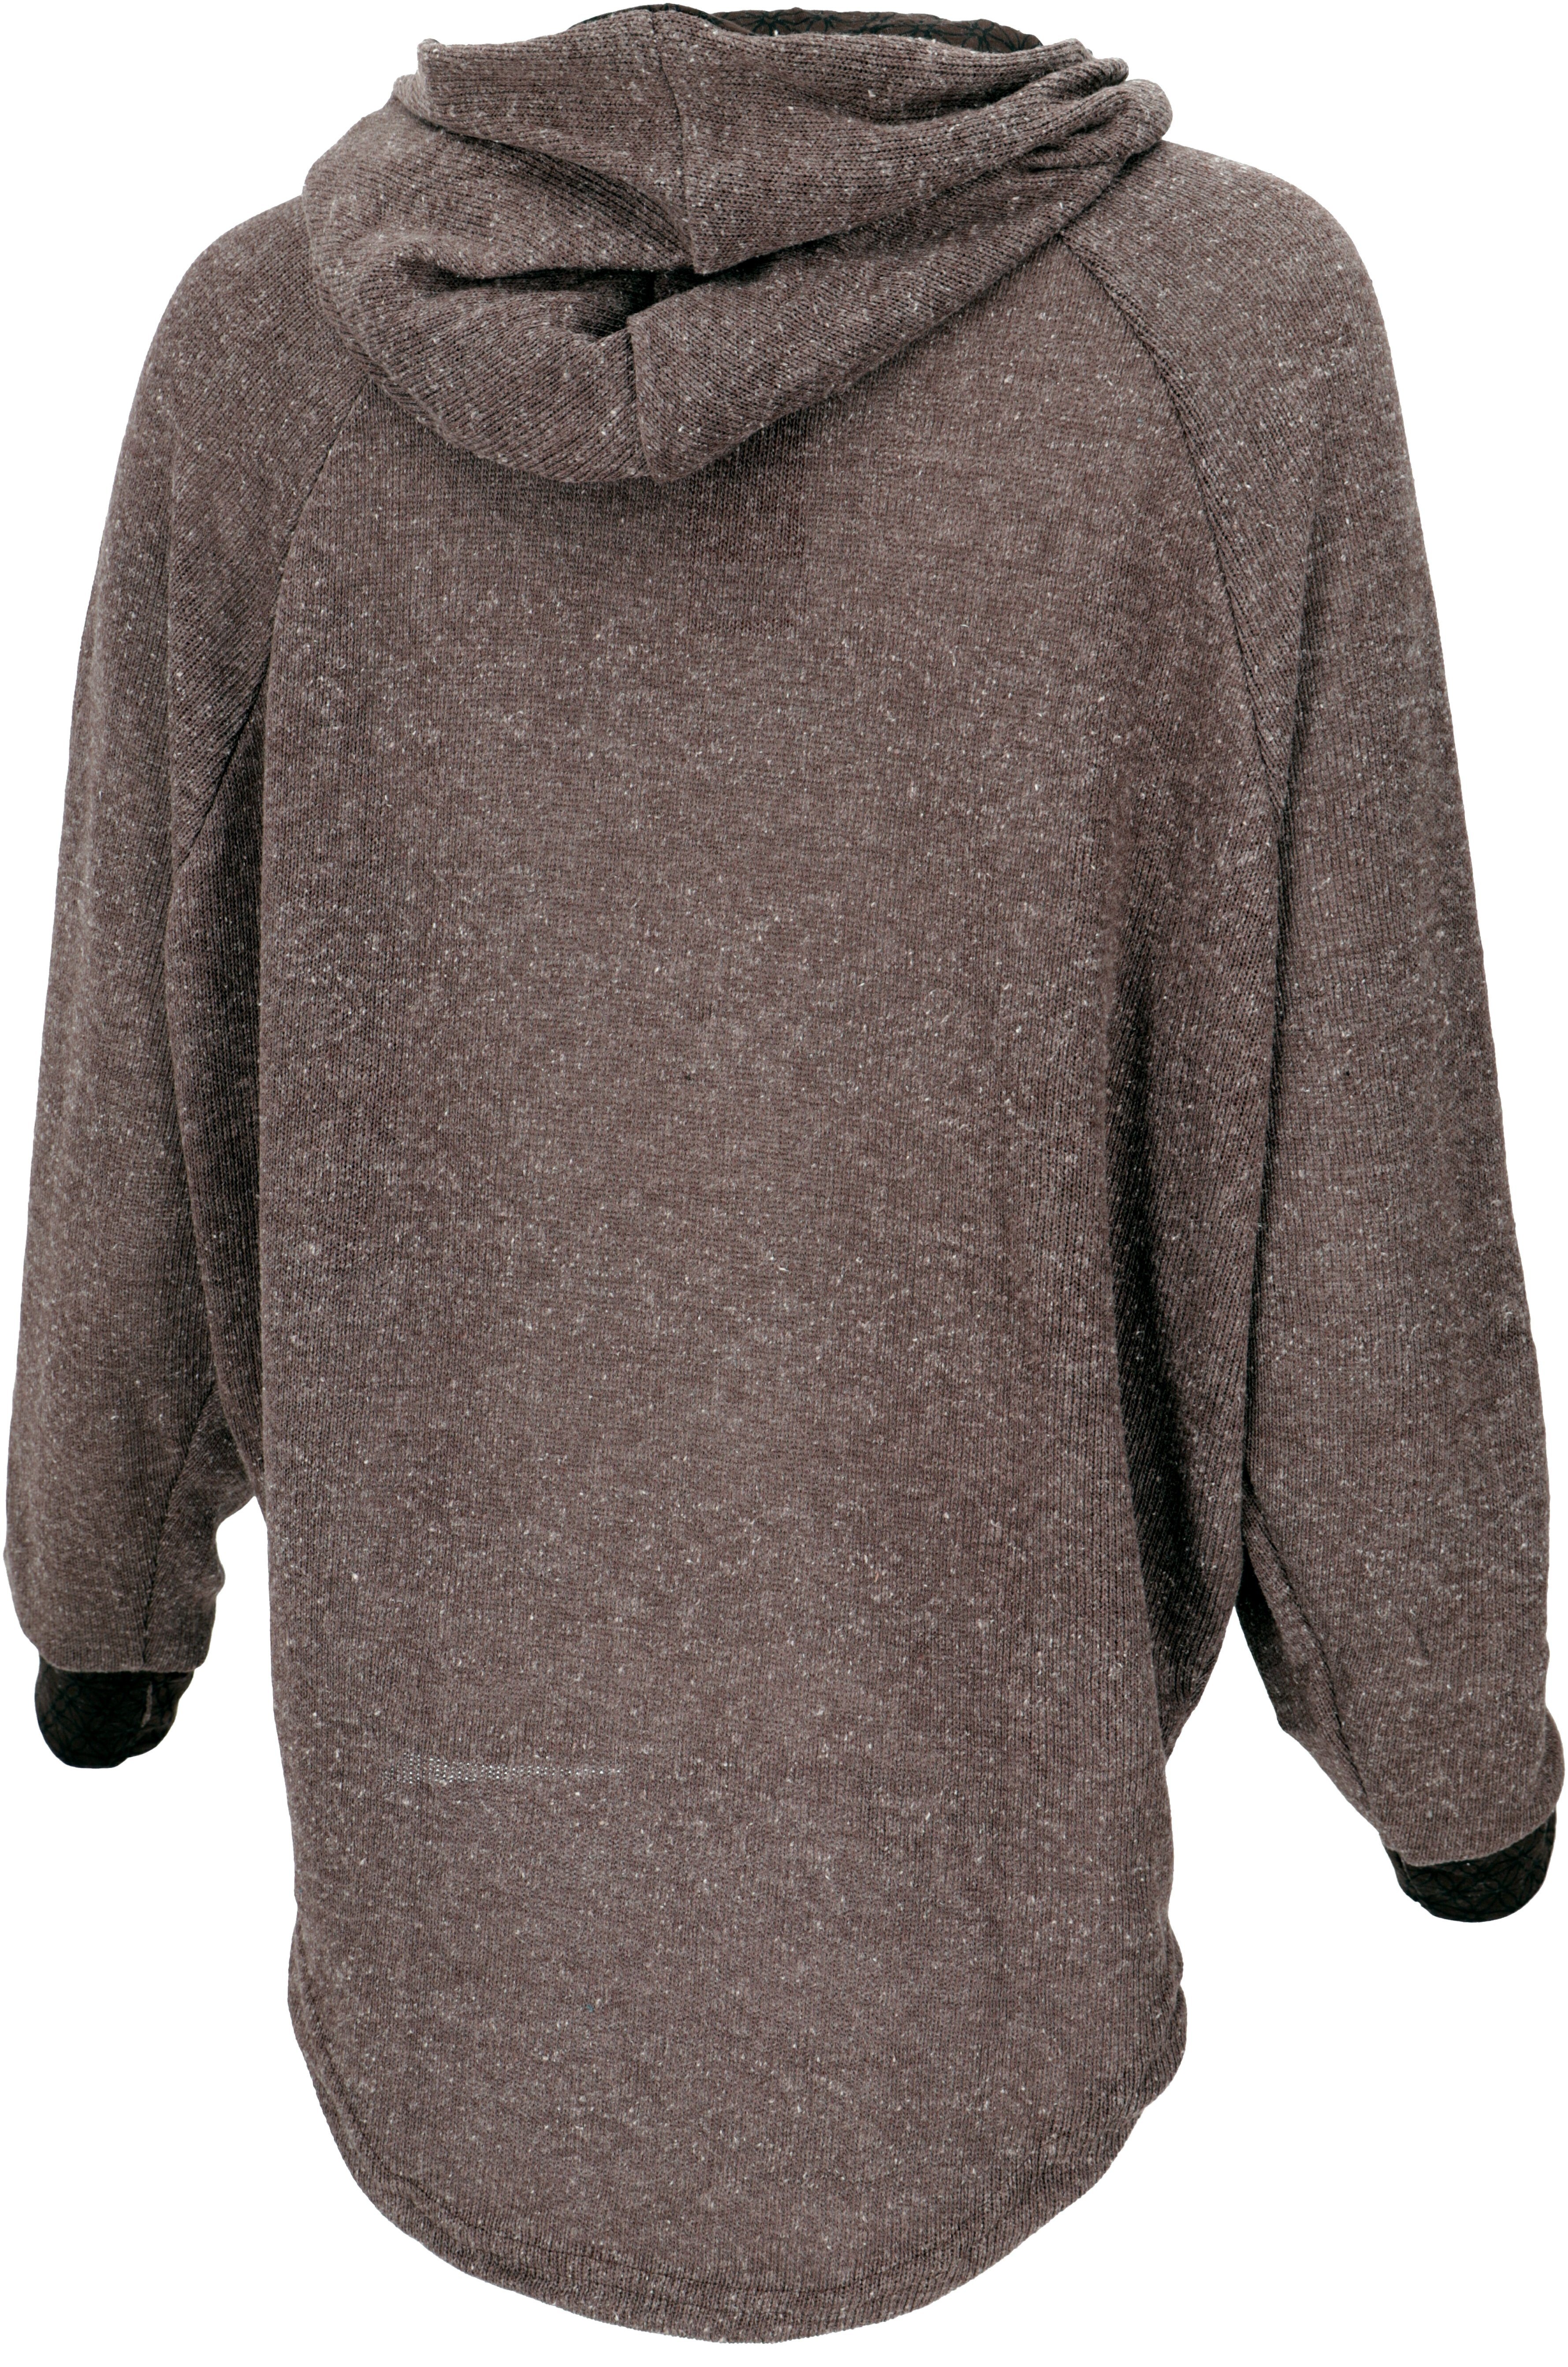 Guru-Shop Longsleeve Pullover, braun Bekleidung alternative Hoody, Kapuzenpullover Sweatshirt, 